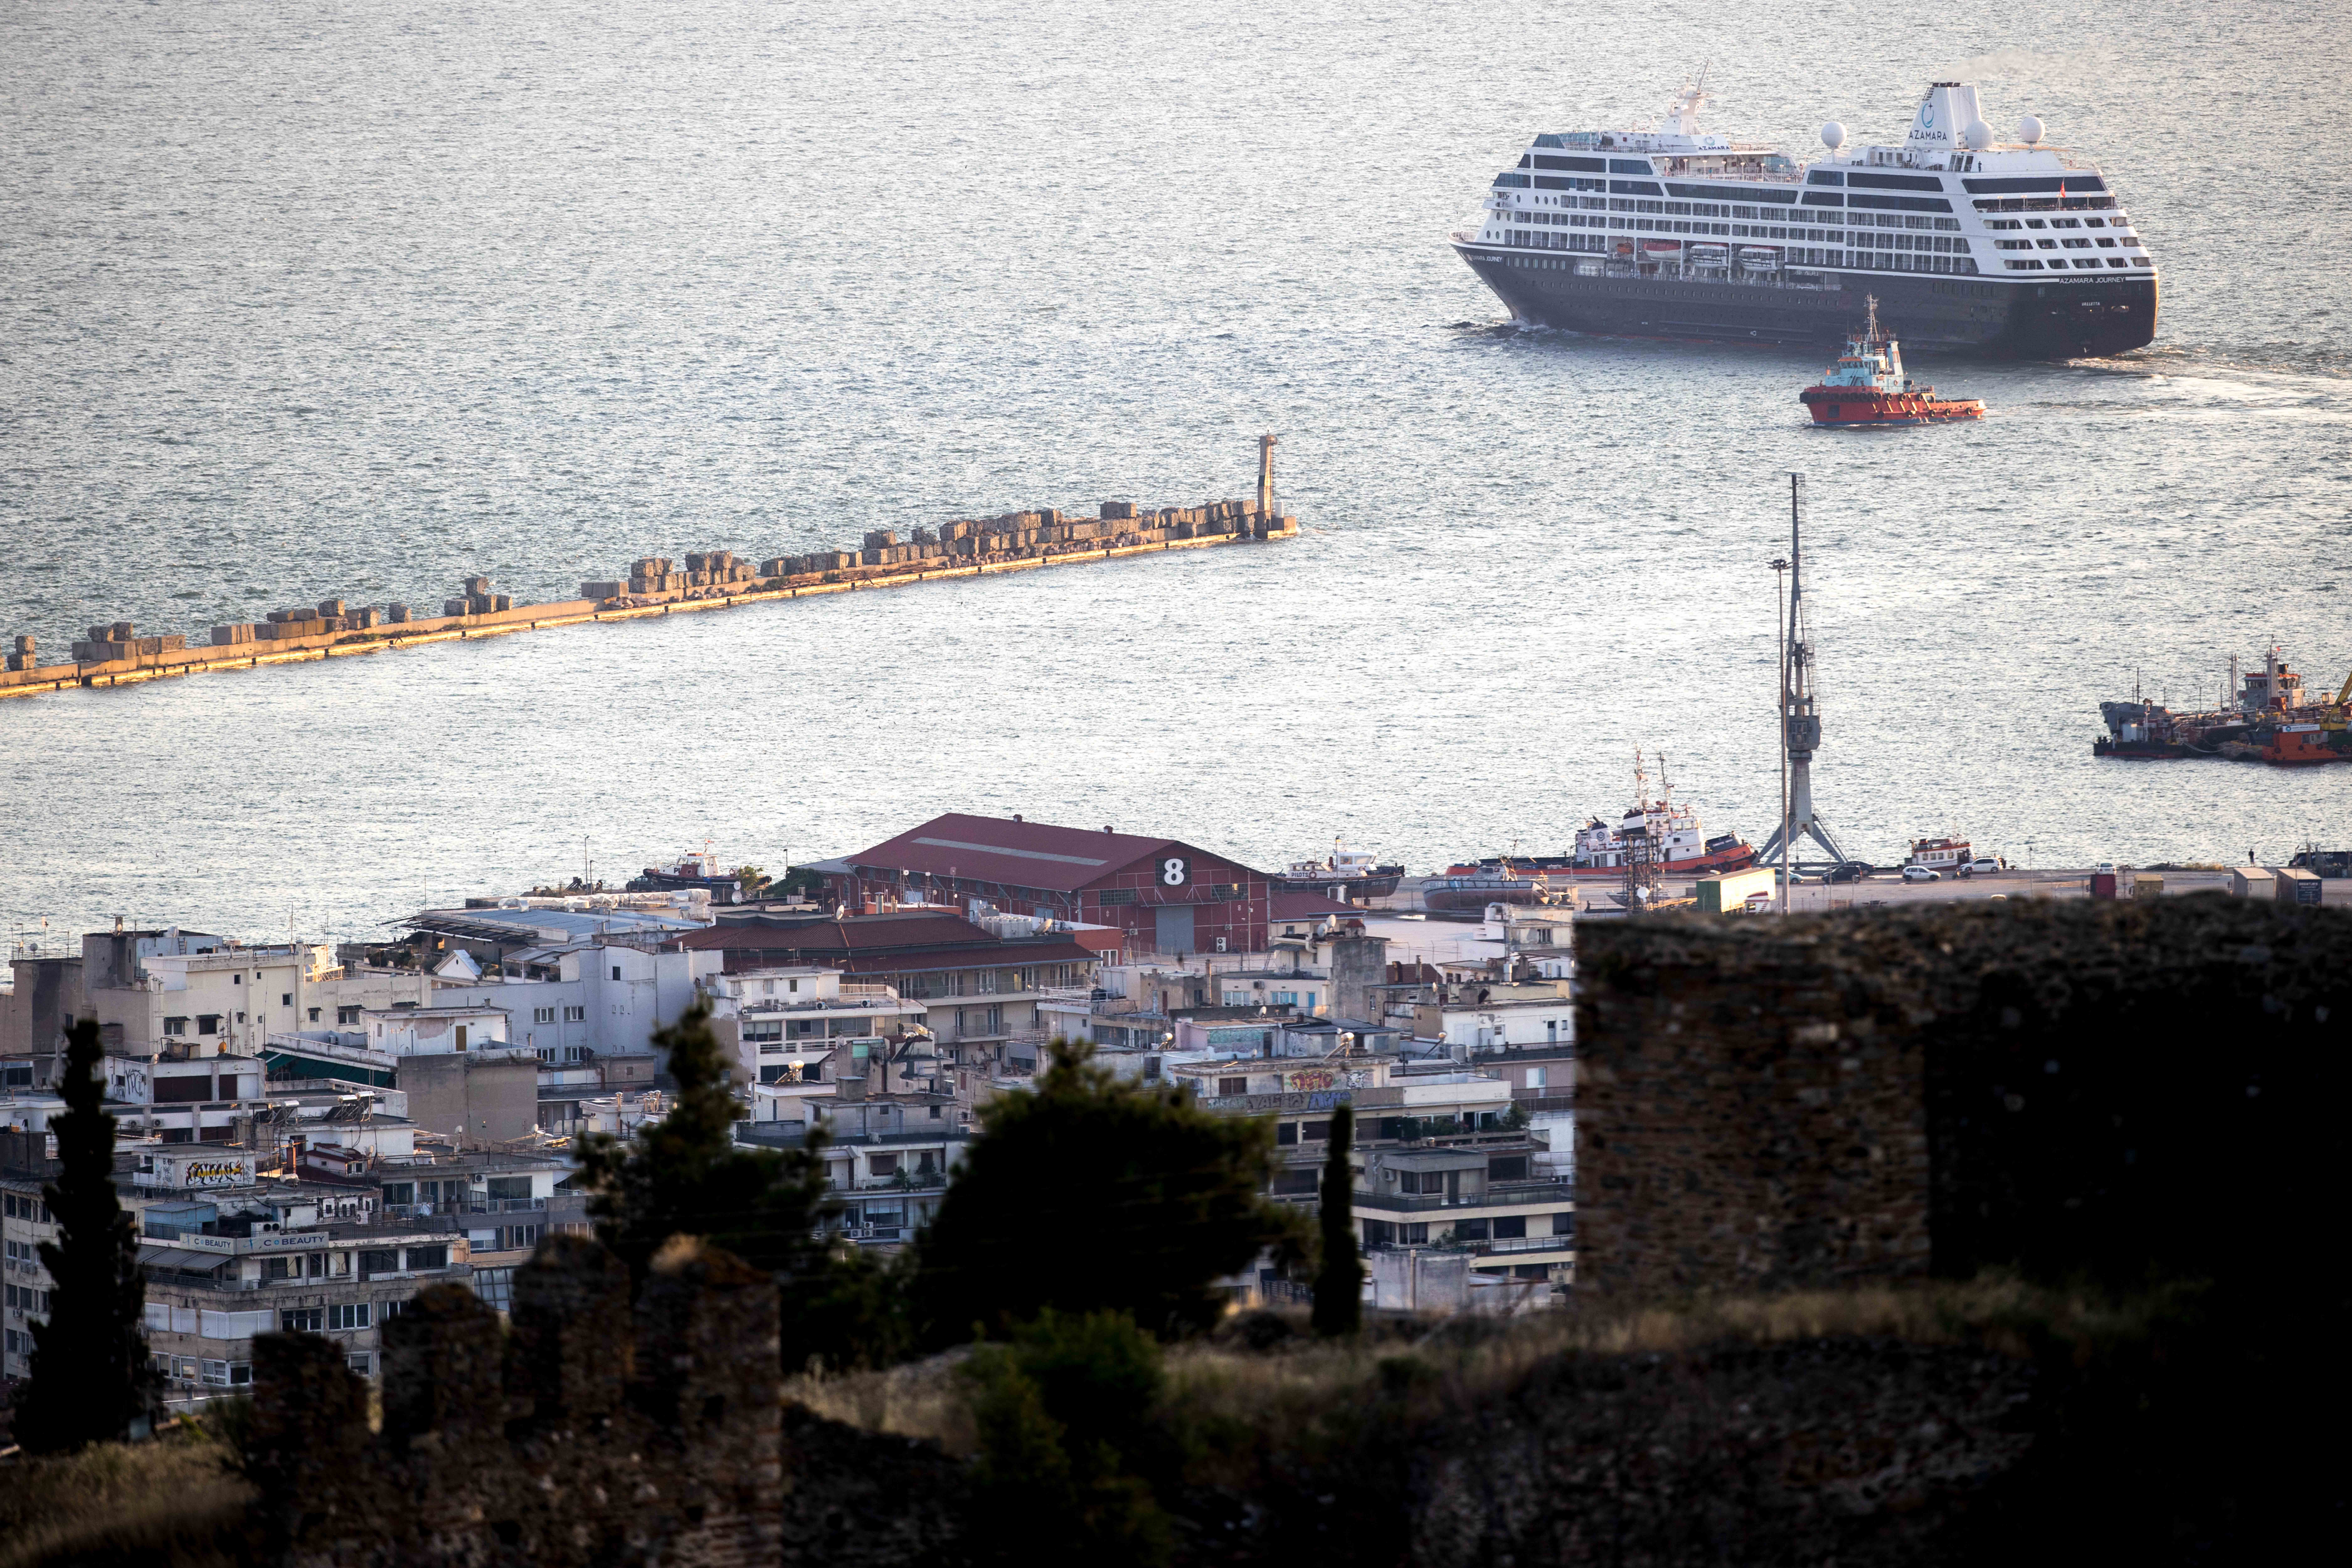 Συνεργασία, η λέξη «κλειδί» για να καταστεί ηγέτιδα η Θεσσαλονίκη στη ΝΑ Ευρώπη στους τομείς βιομηχανίας, τεχνολογιών και logistics